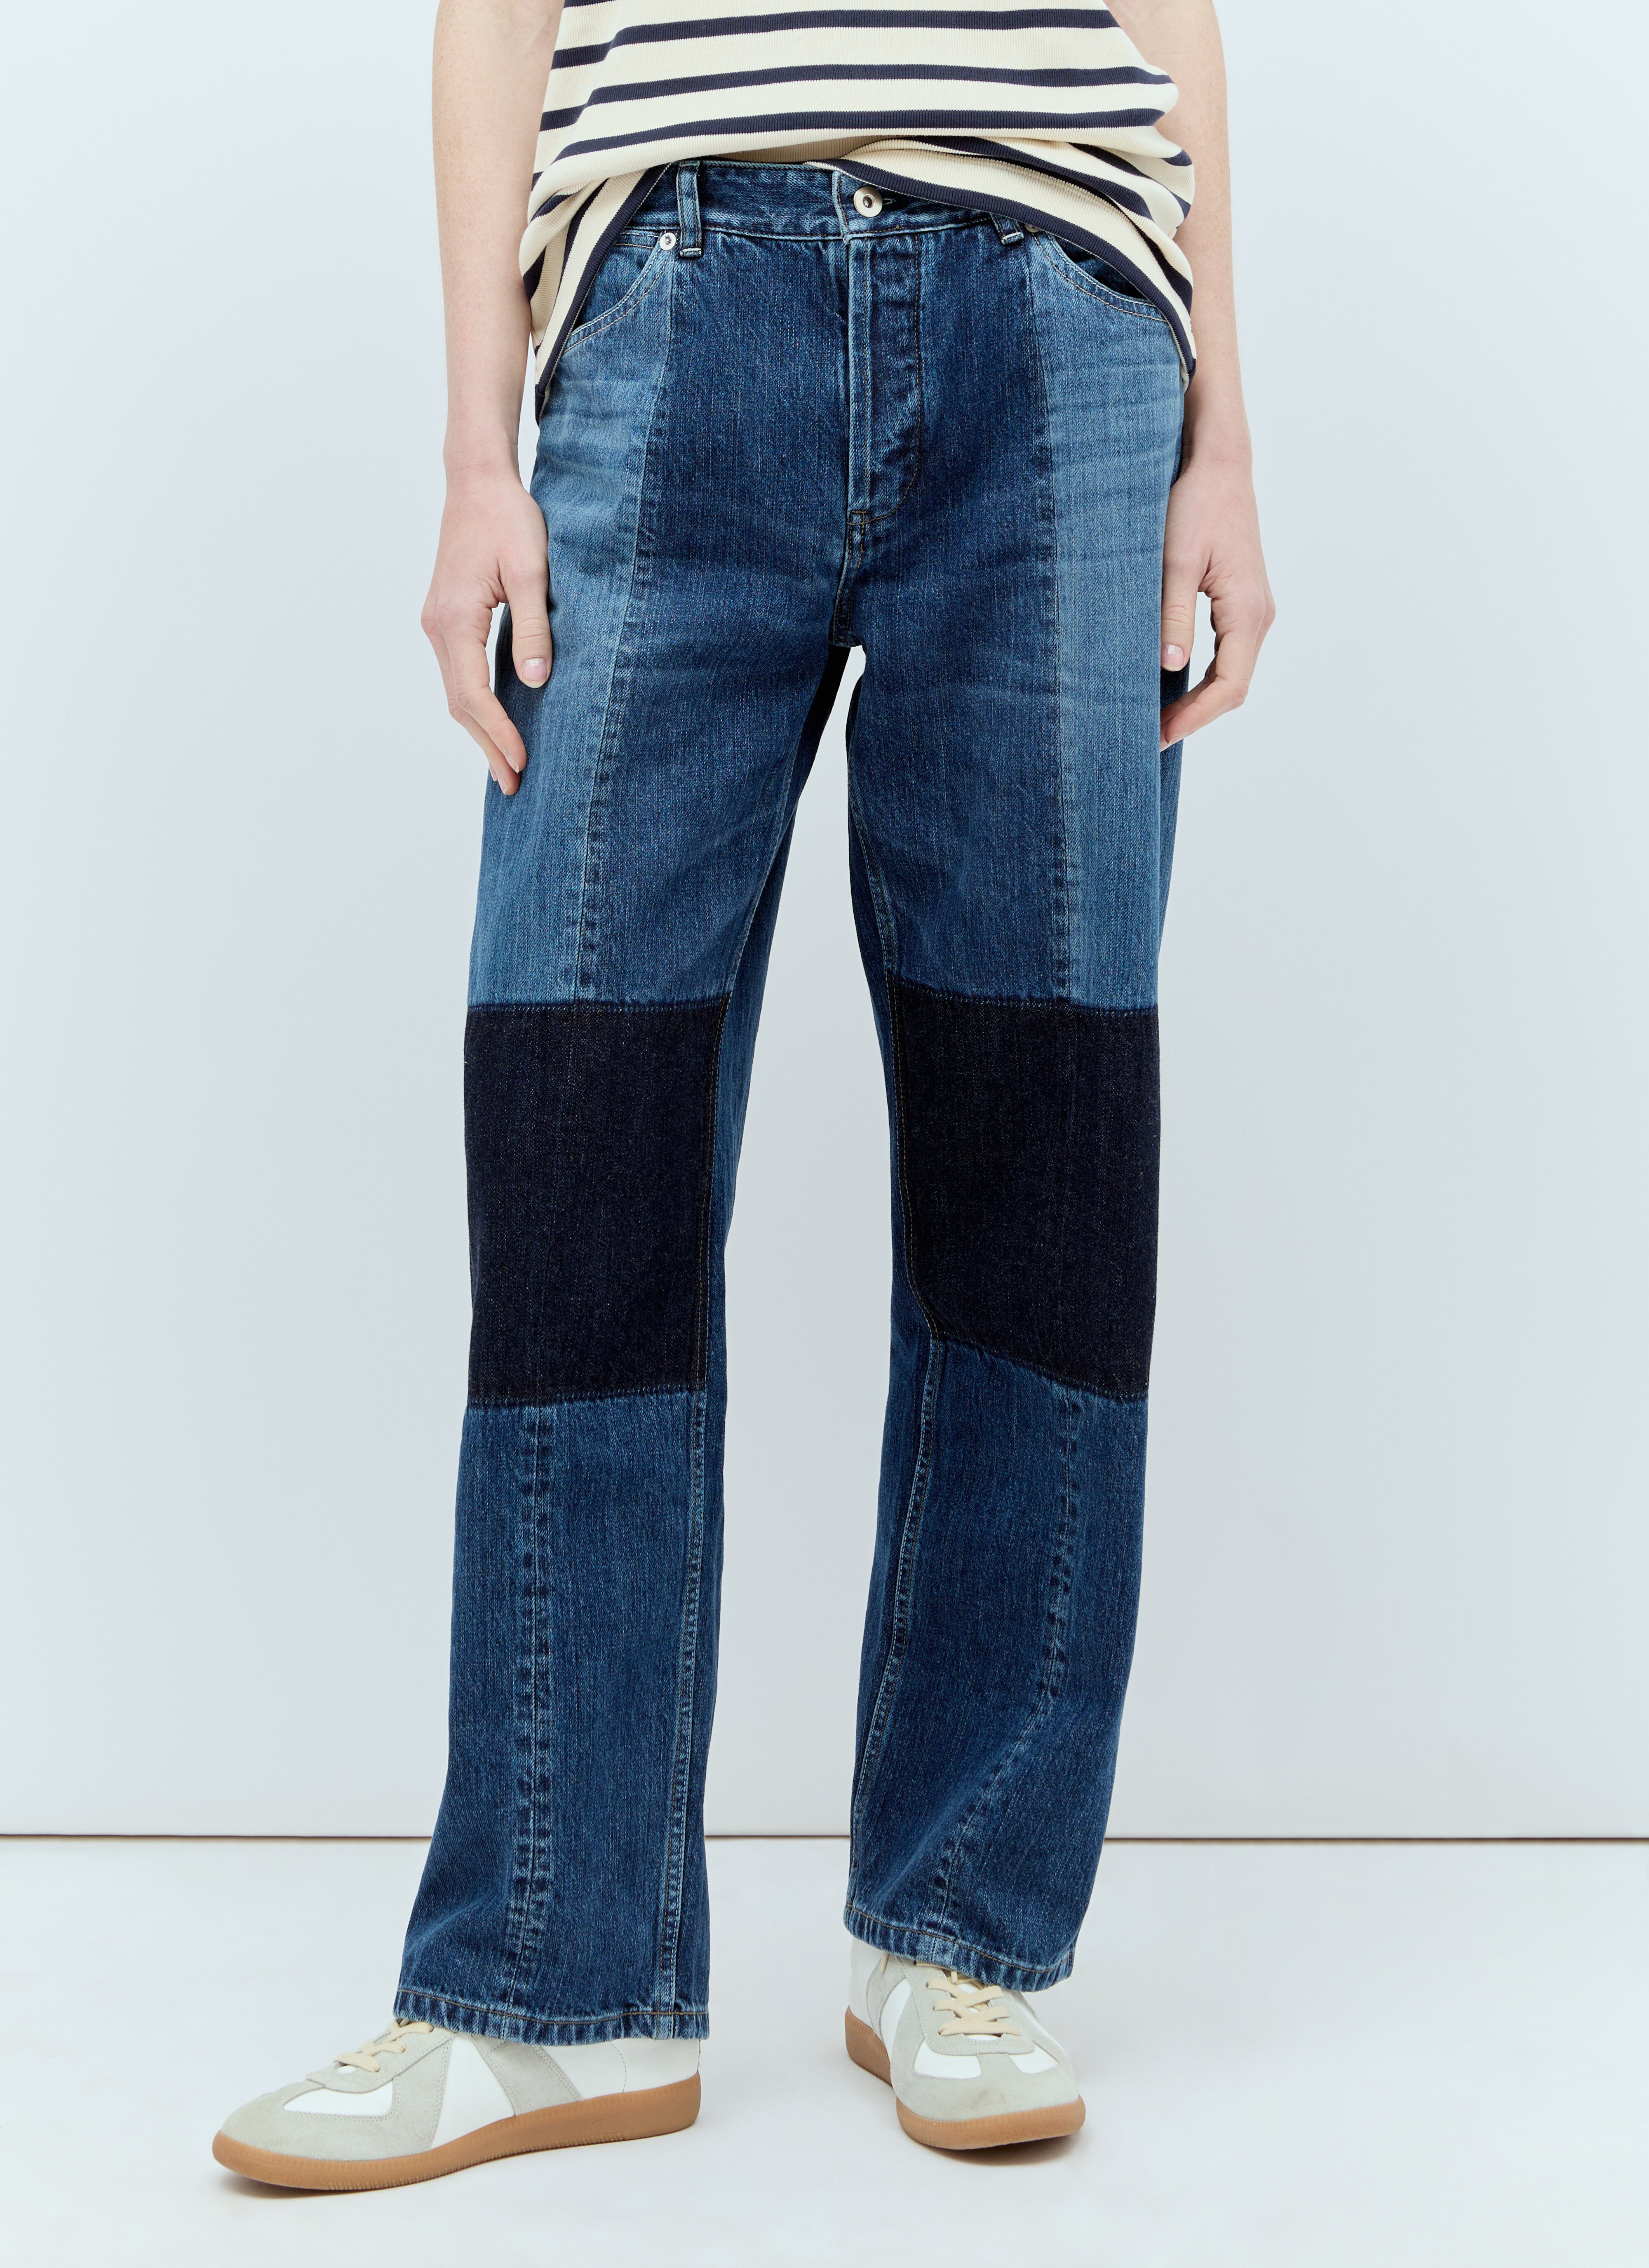 Jil Sander+ Panelled Jeans Grey jsp0251008